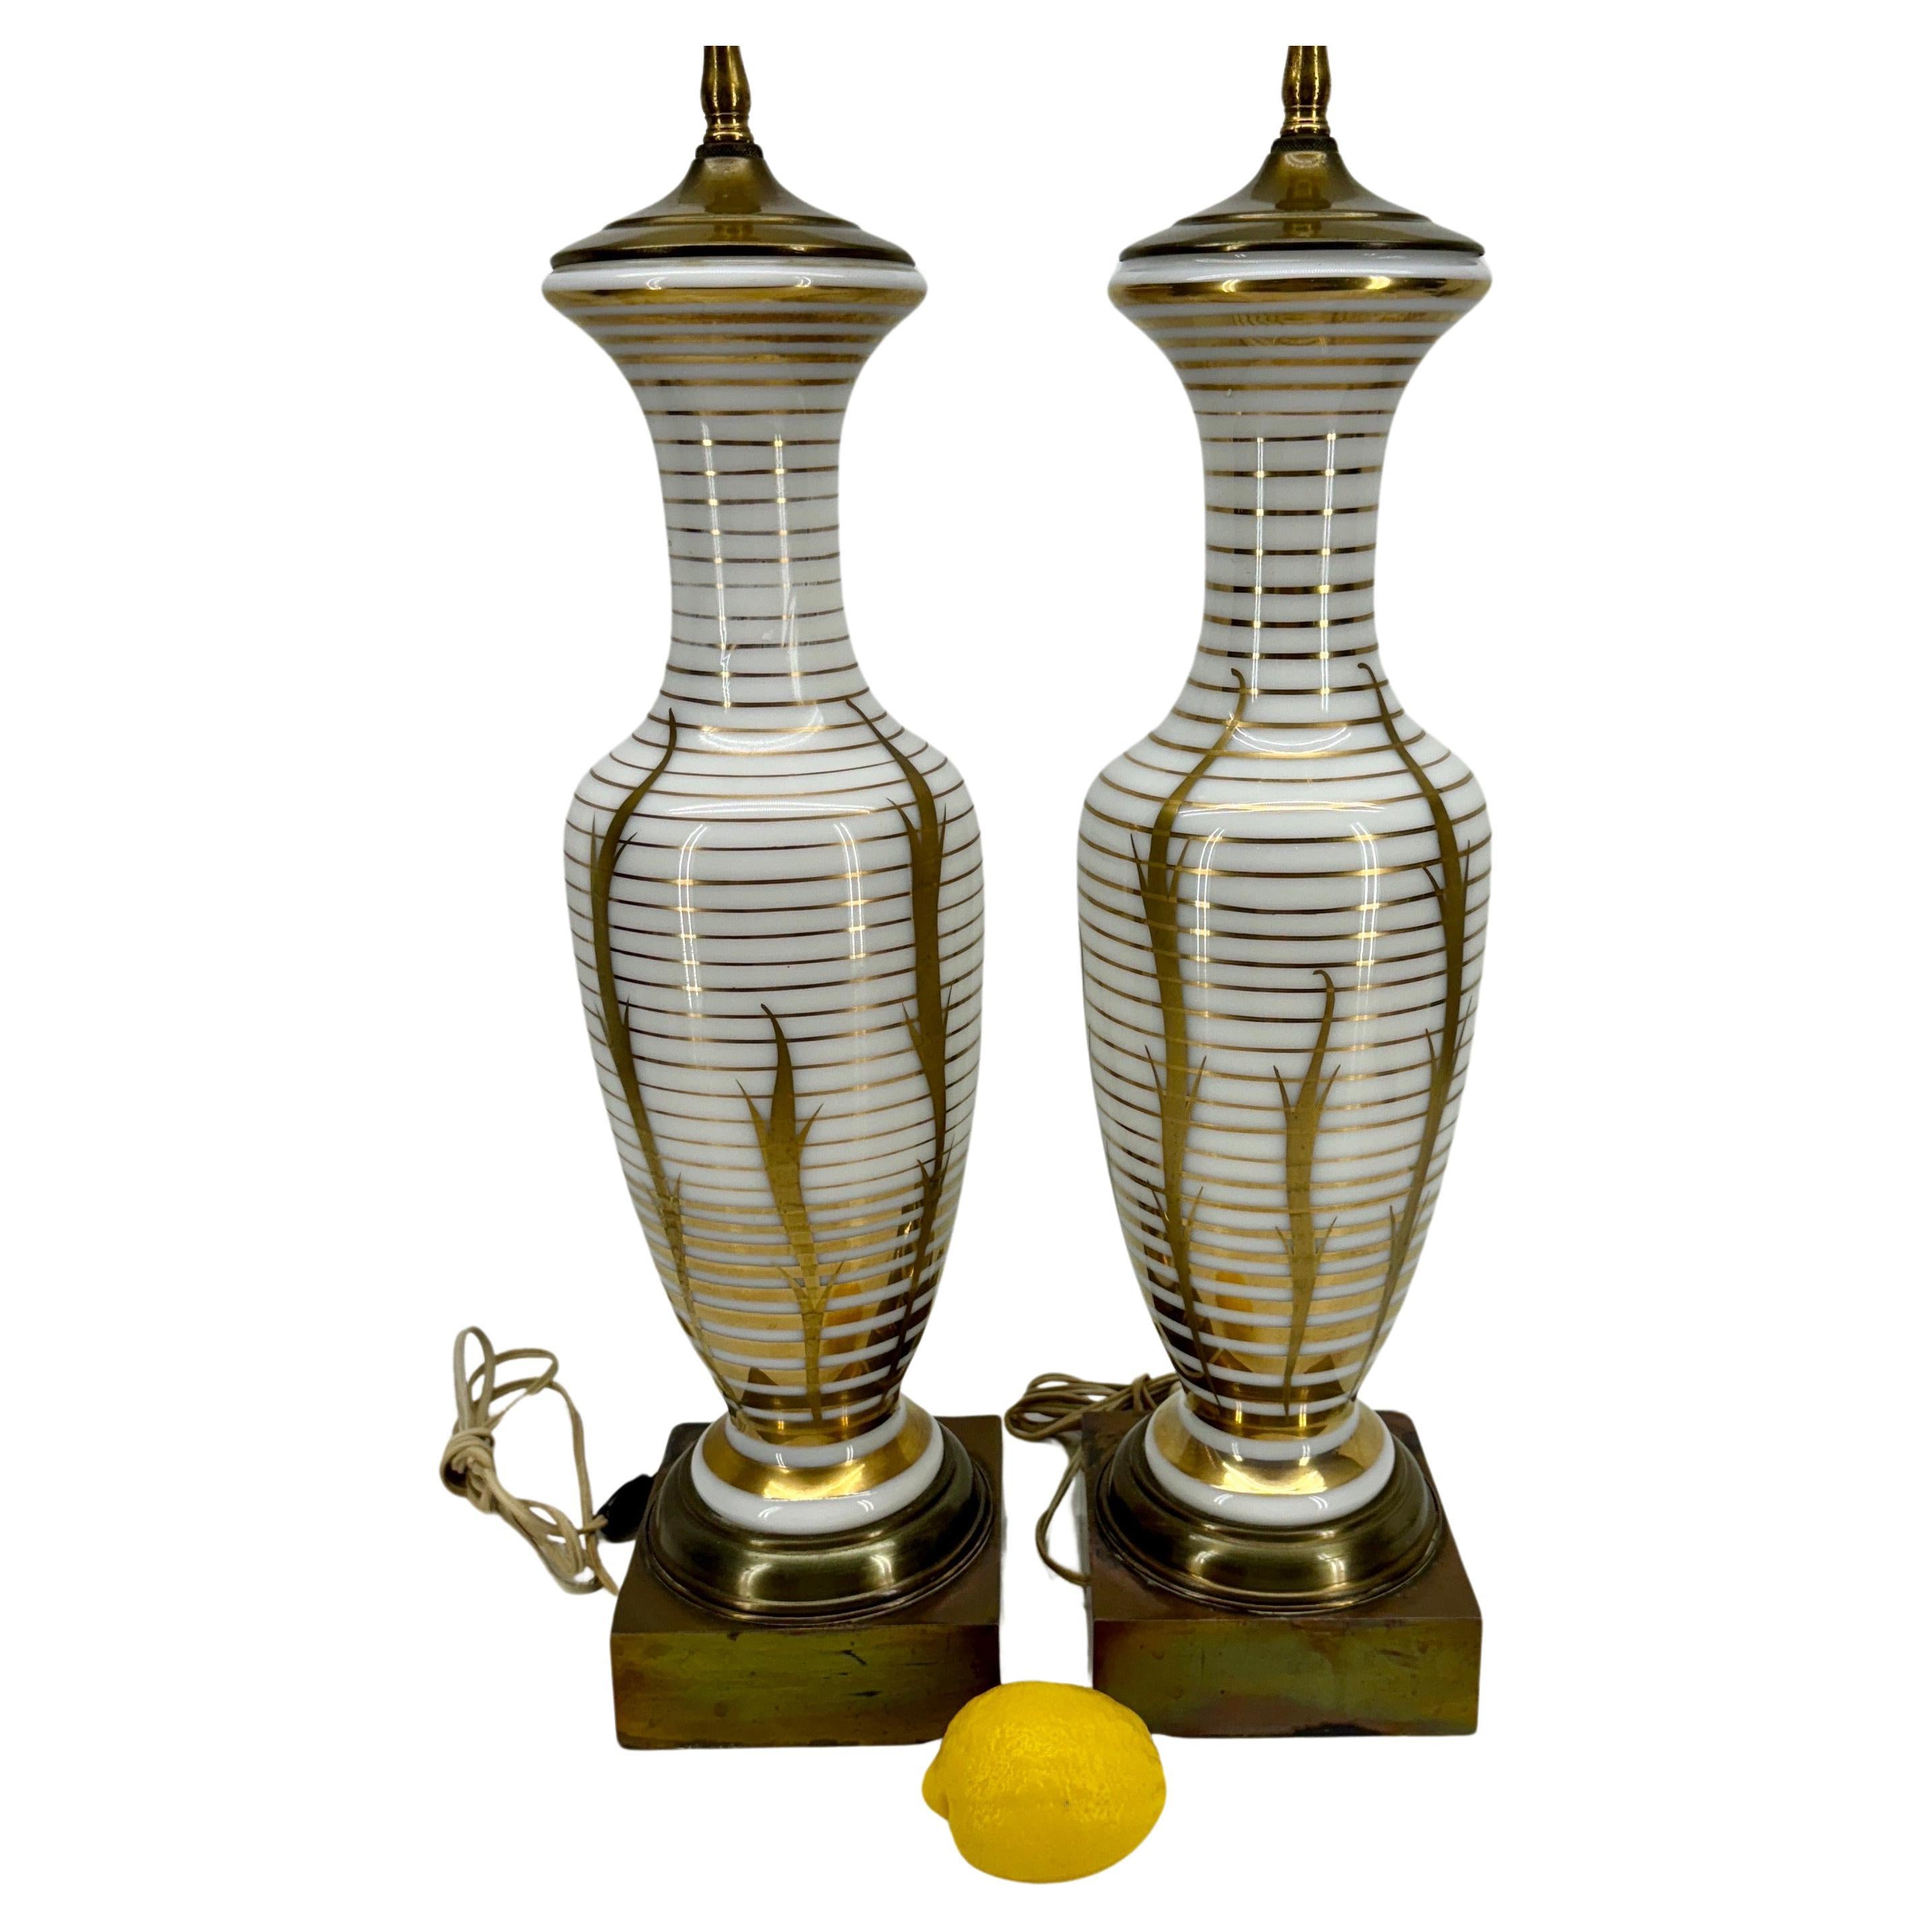 Paire de lampes de table en verre opalin décorées en or doré

Illuminez votre intérieur avec ces lampes de table en verre opalin avec bandes dorées et rayures. Ces lampes exquises ne sont pas seulement une source de lumière, mais aussi une